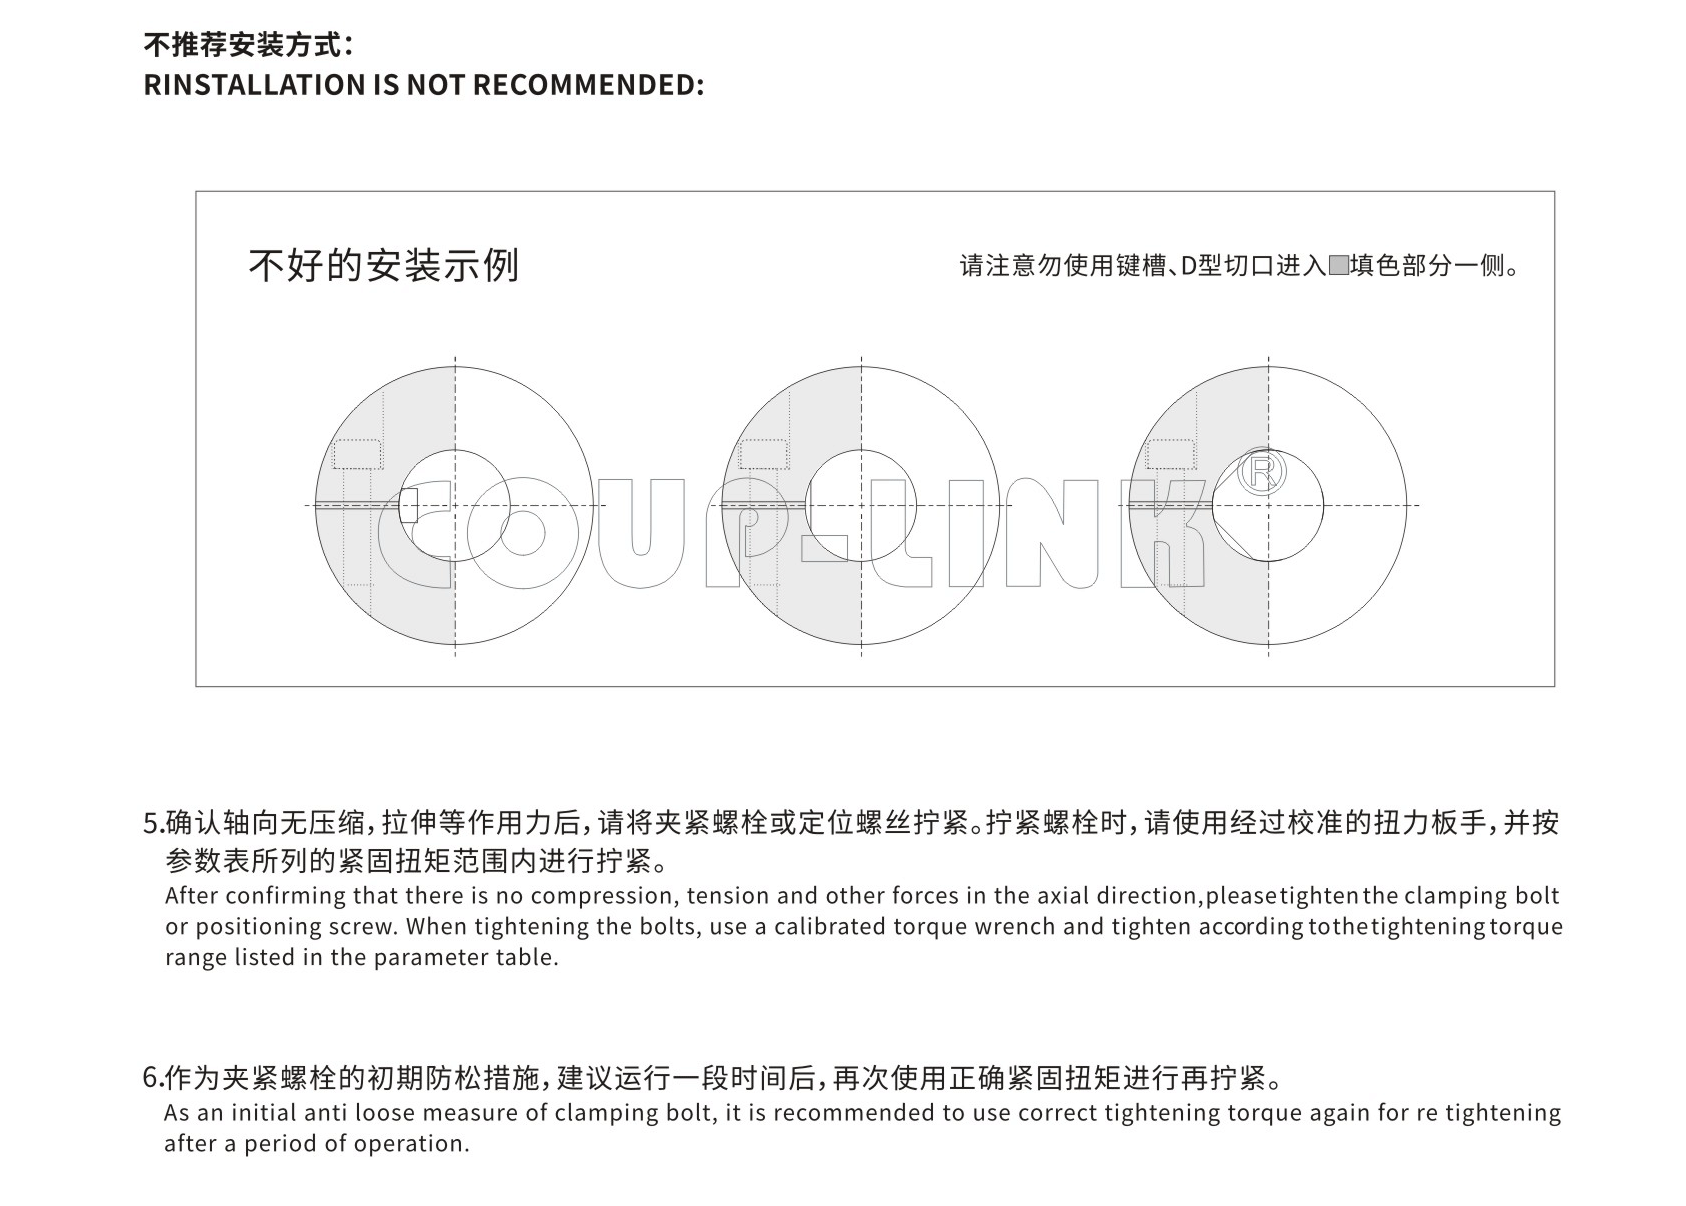 LK31 高扭矩十字滑块联轴器（定位螺丝固定式）_联轴器种类-广州菱科自动化设备有限公司